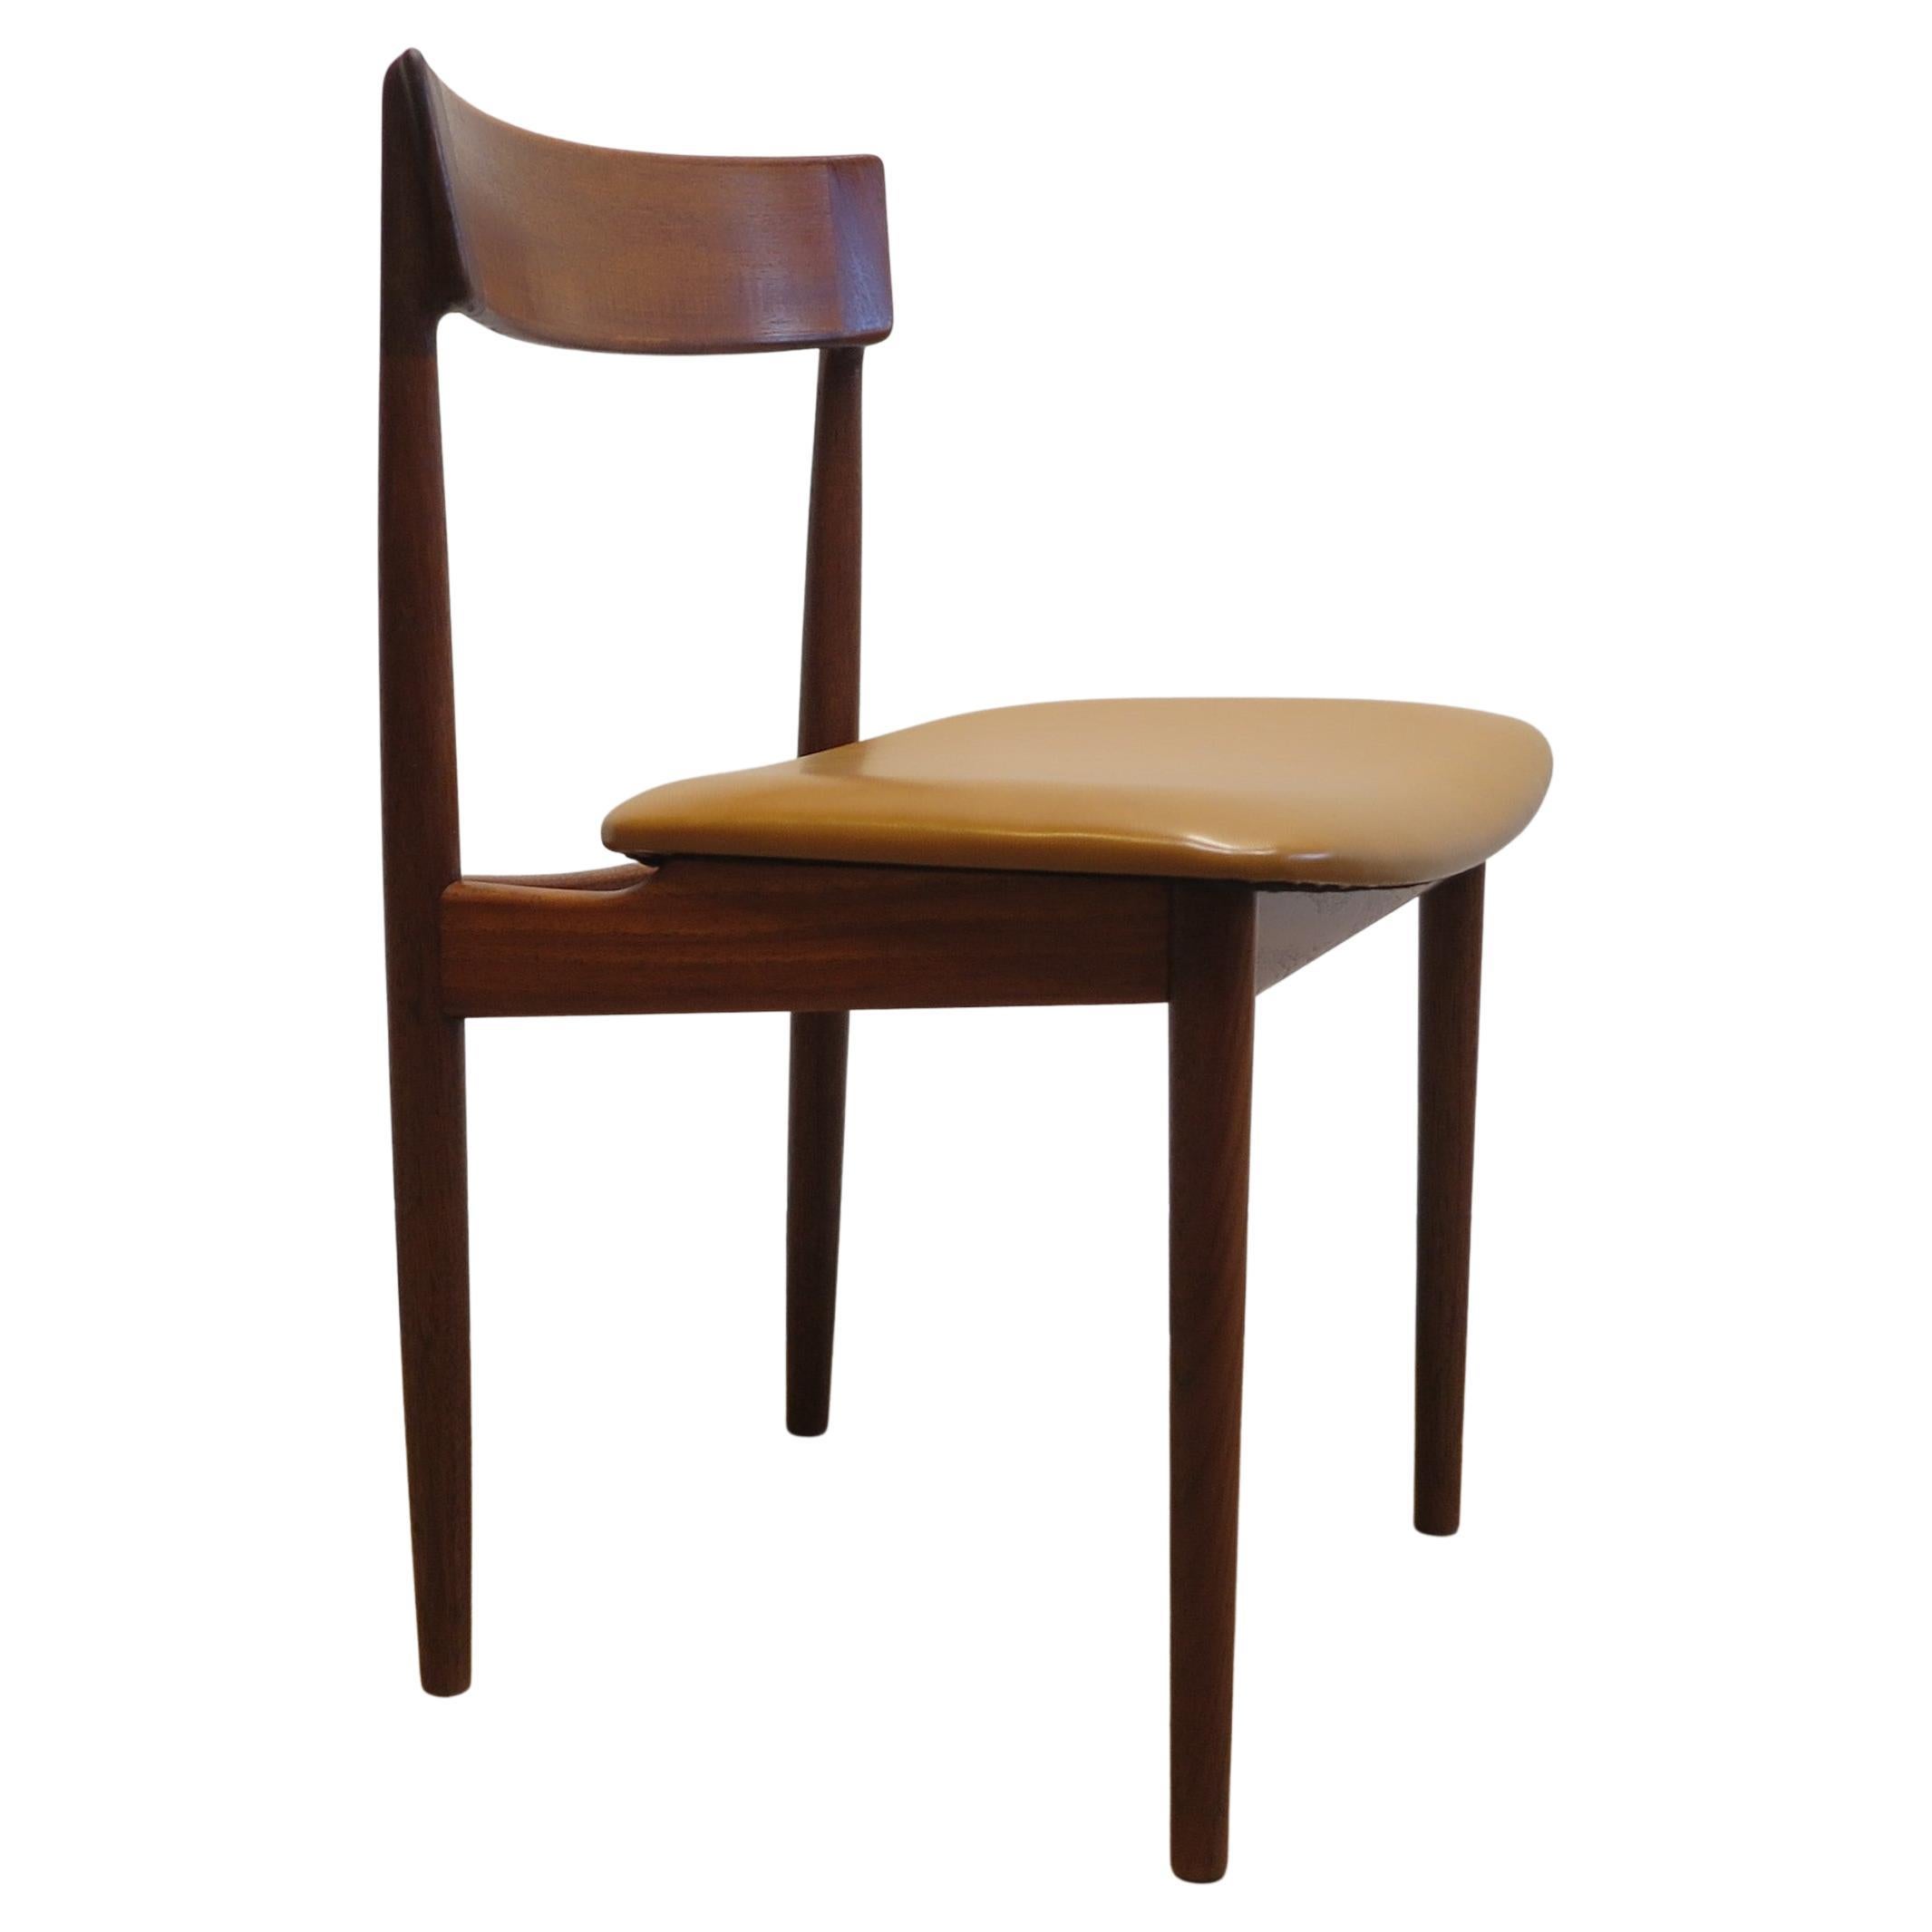 Occasional Chair Henry Rosengren Hansen model 39